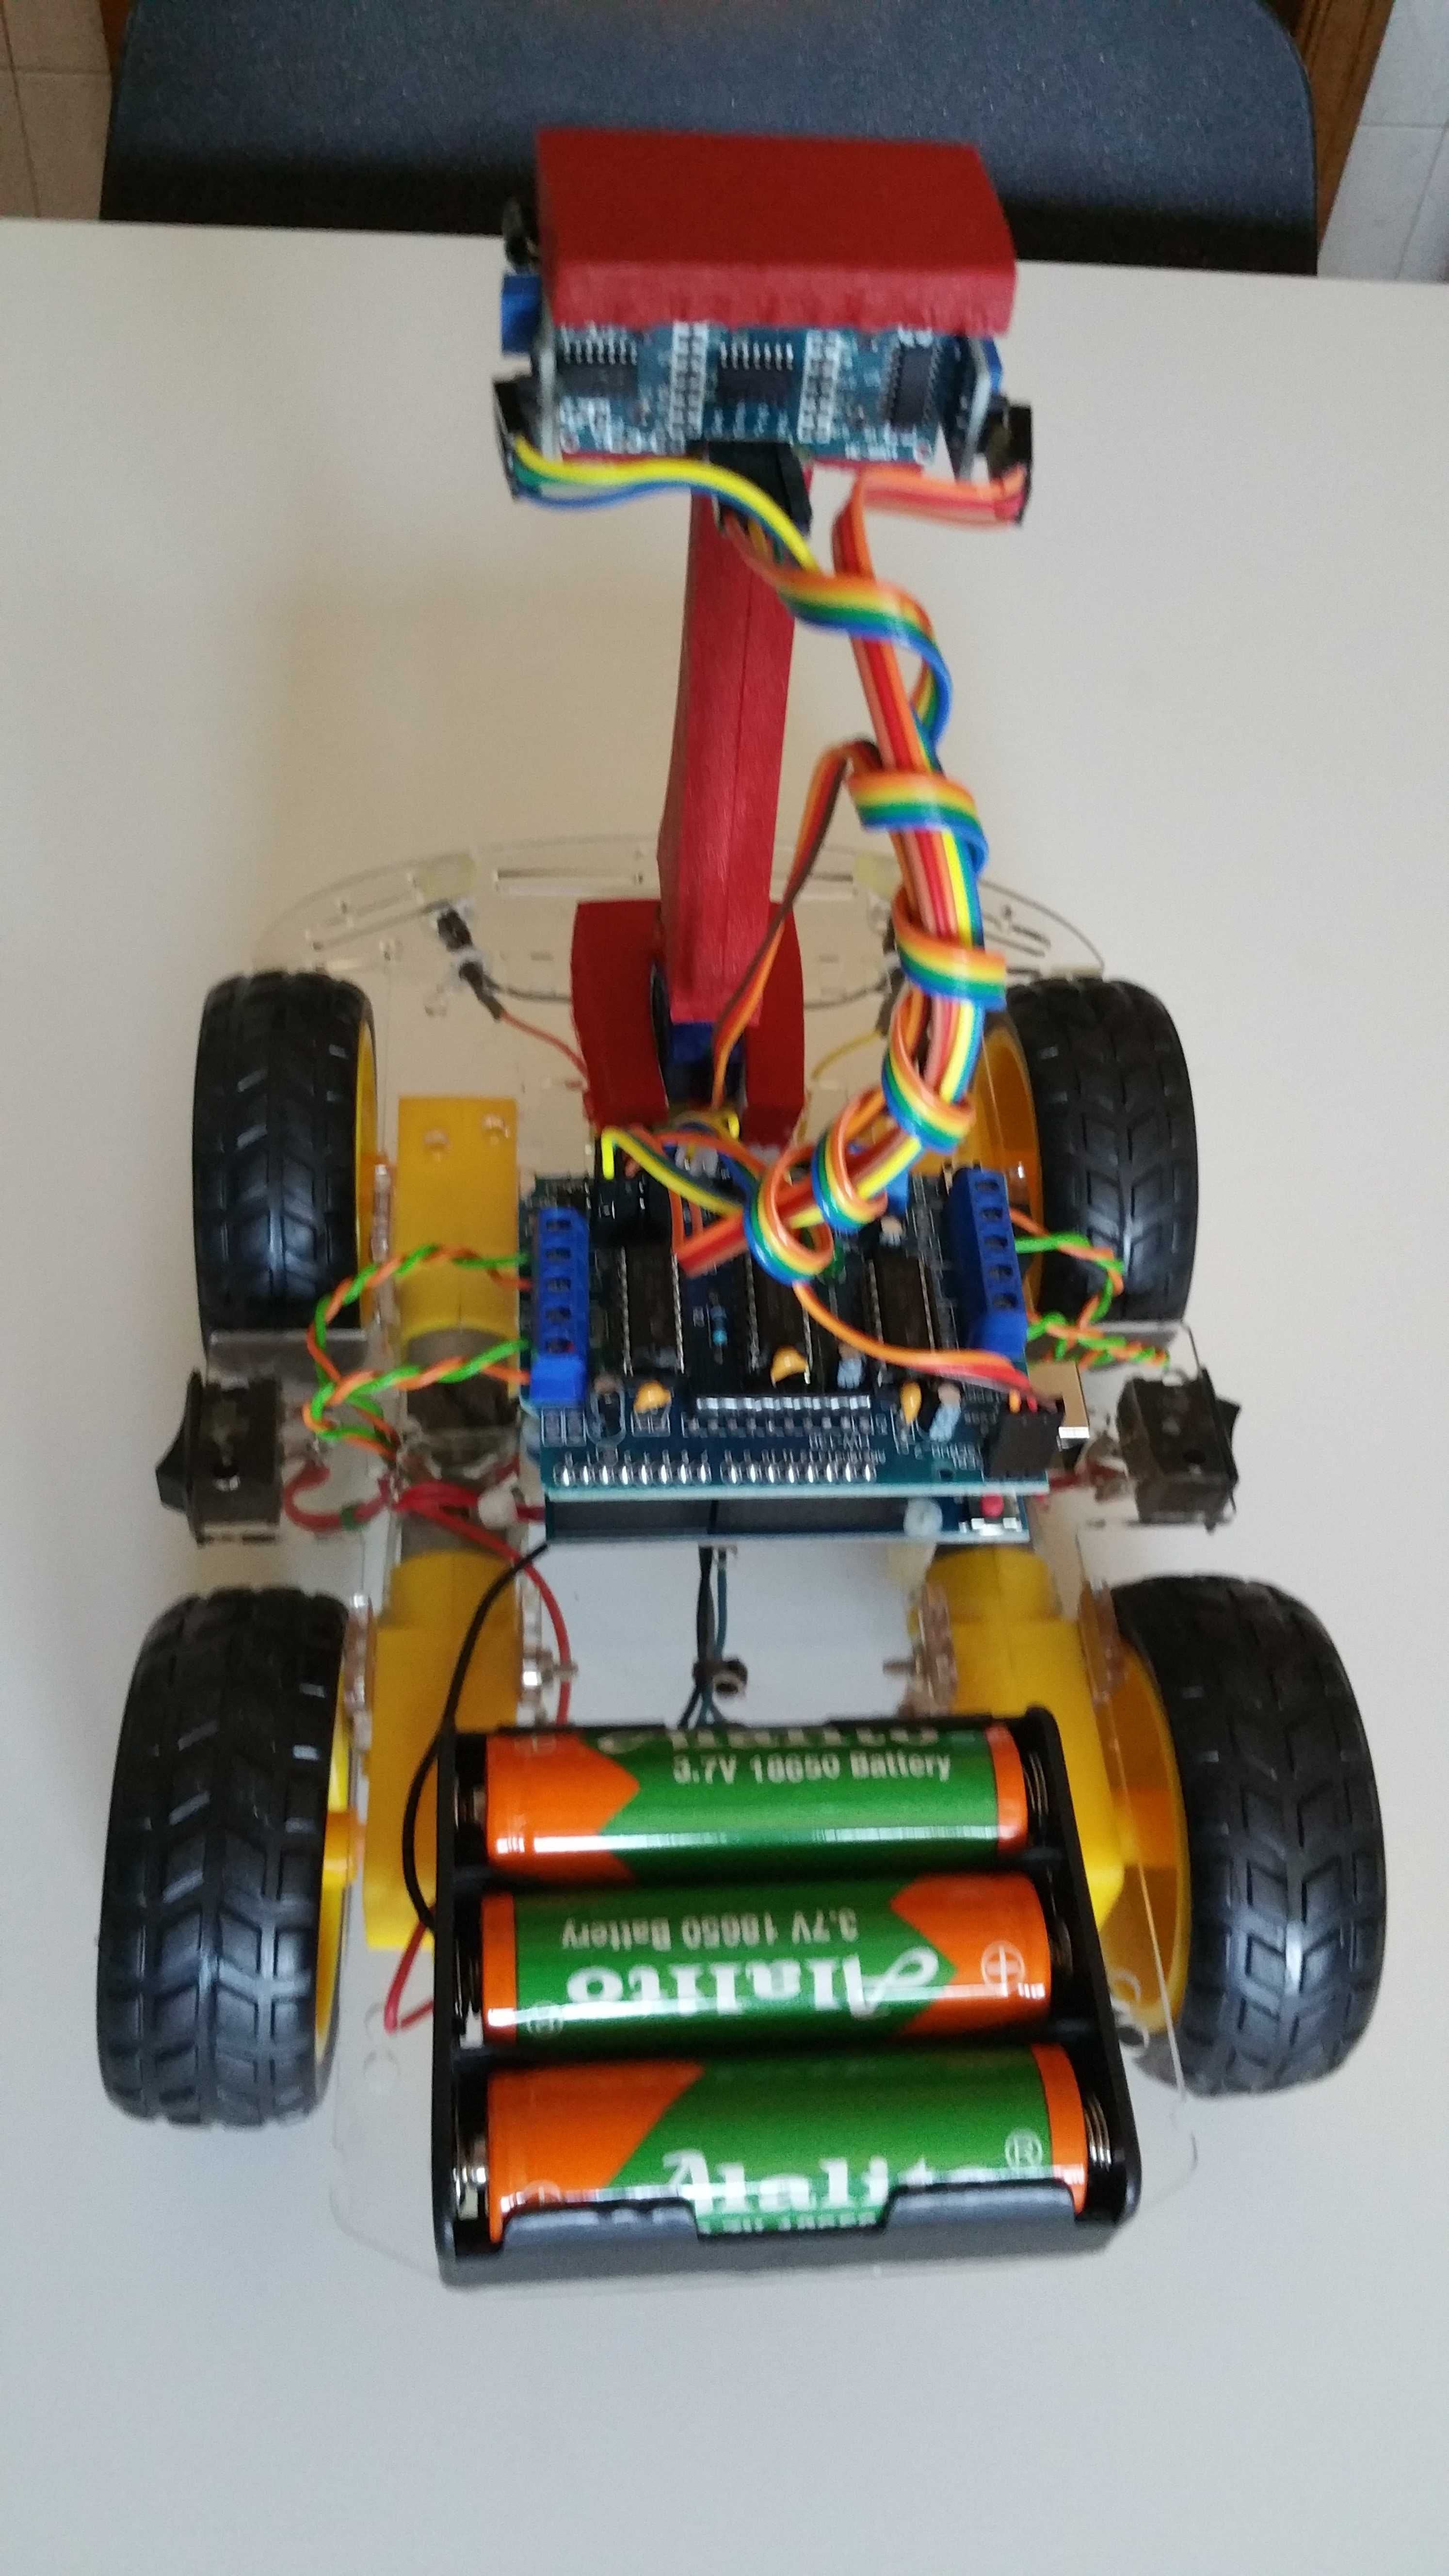 Carro Robot Educacional Arduino programado Seguidor Humanos c/luzes.